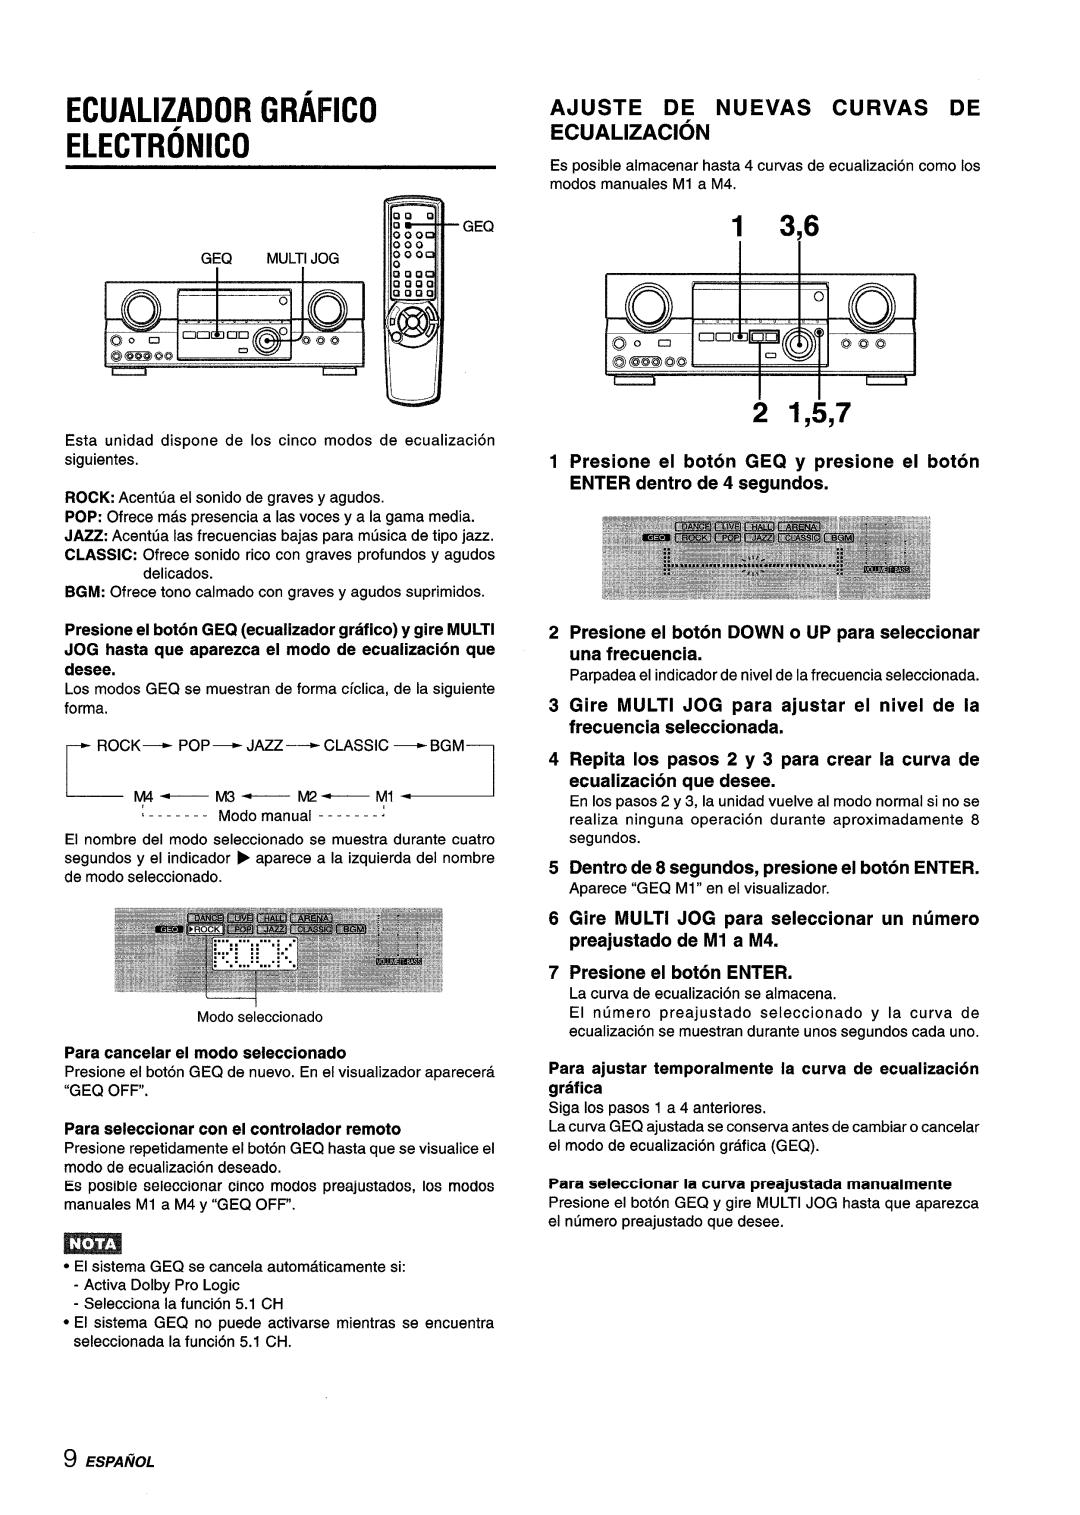 Aiwa AV-D55 Ecualizador Grafico, Electronic, 2 1,5,7, Ajuste De Nuevas Curvas De Ecualizacion, Presione el boton ENTER 